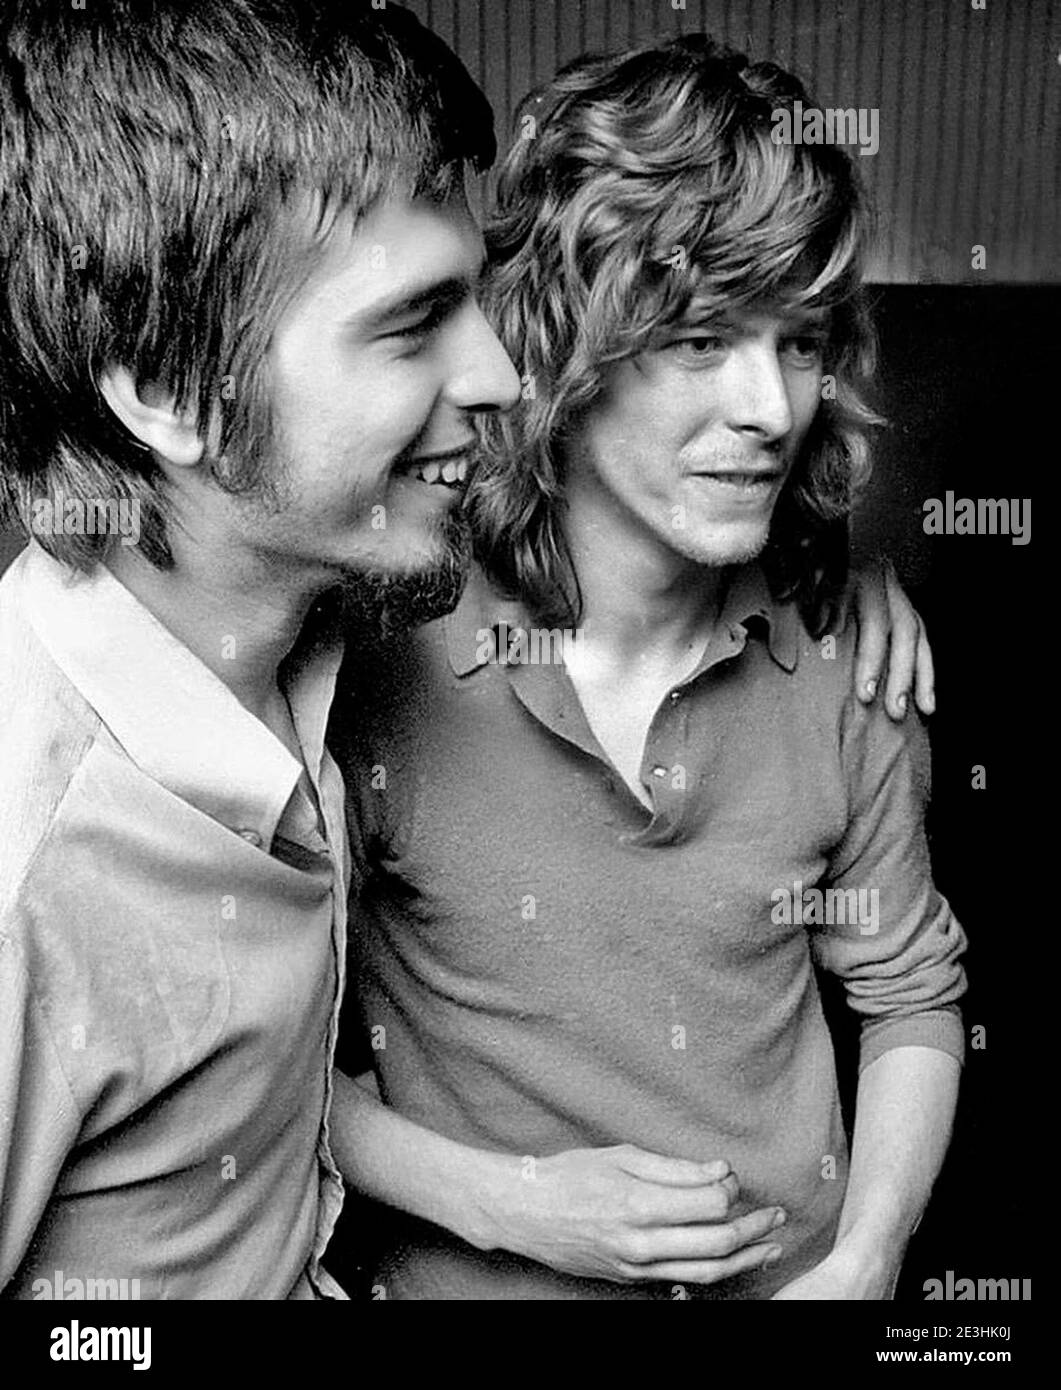 Productor Tony Visconti y David Bowie en el estudio Trident En mayo de 1970 Foto de stock